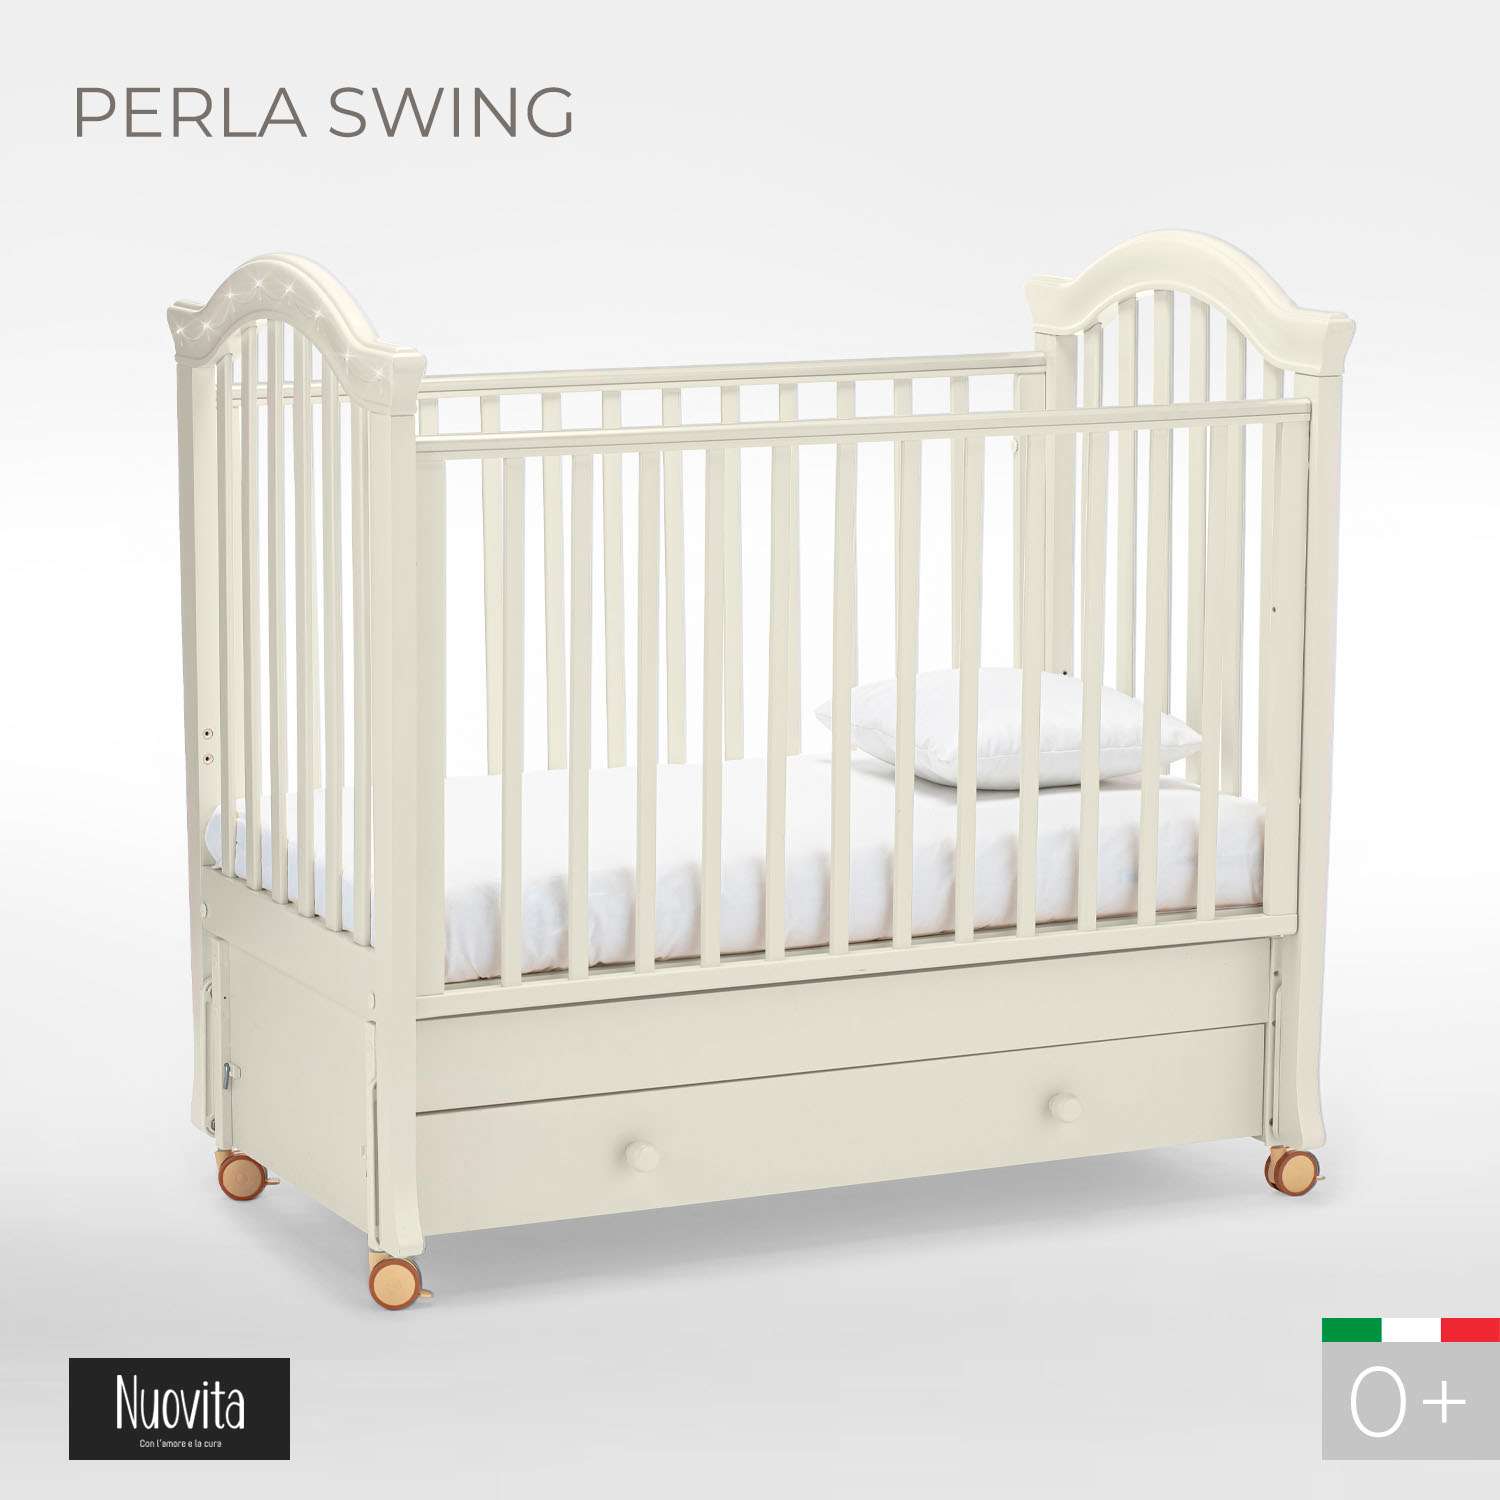 Детская кроватка Nuovita Perla Swing прямоугольная, продольный маятник (ваниль) - фото 2